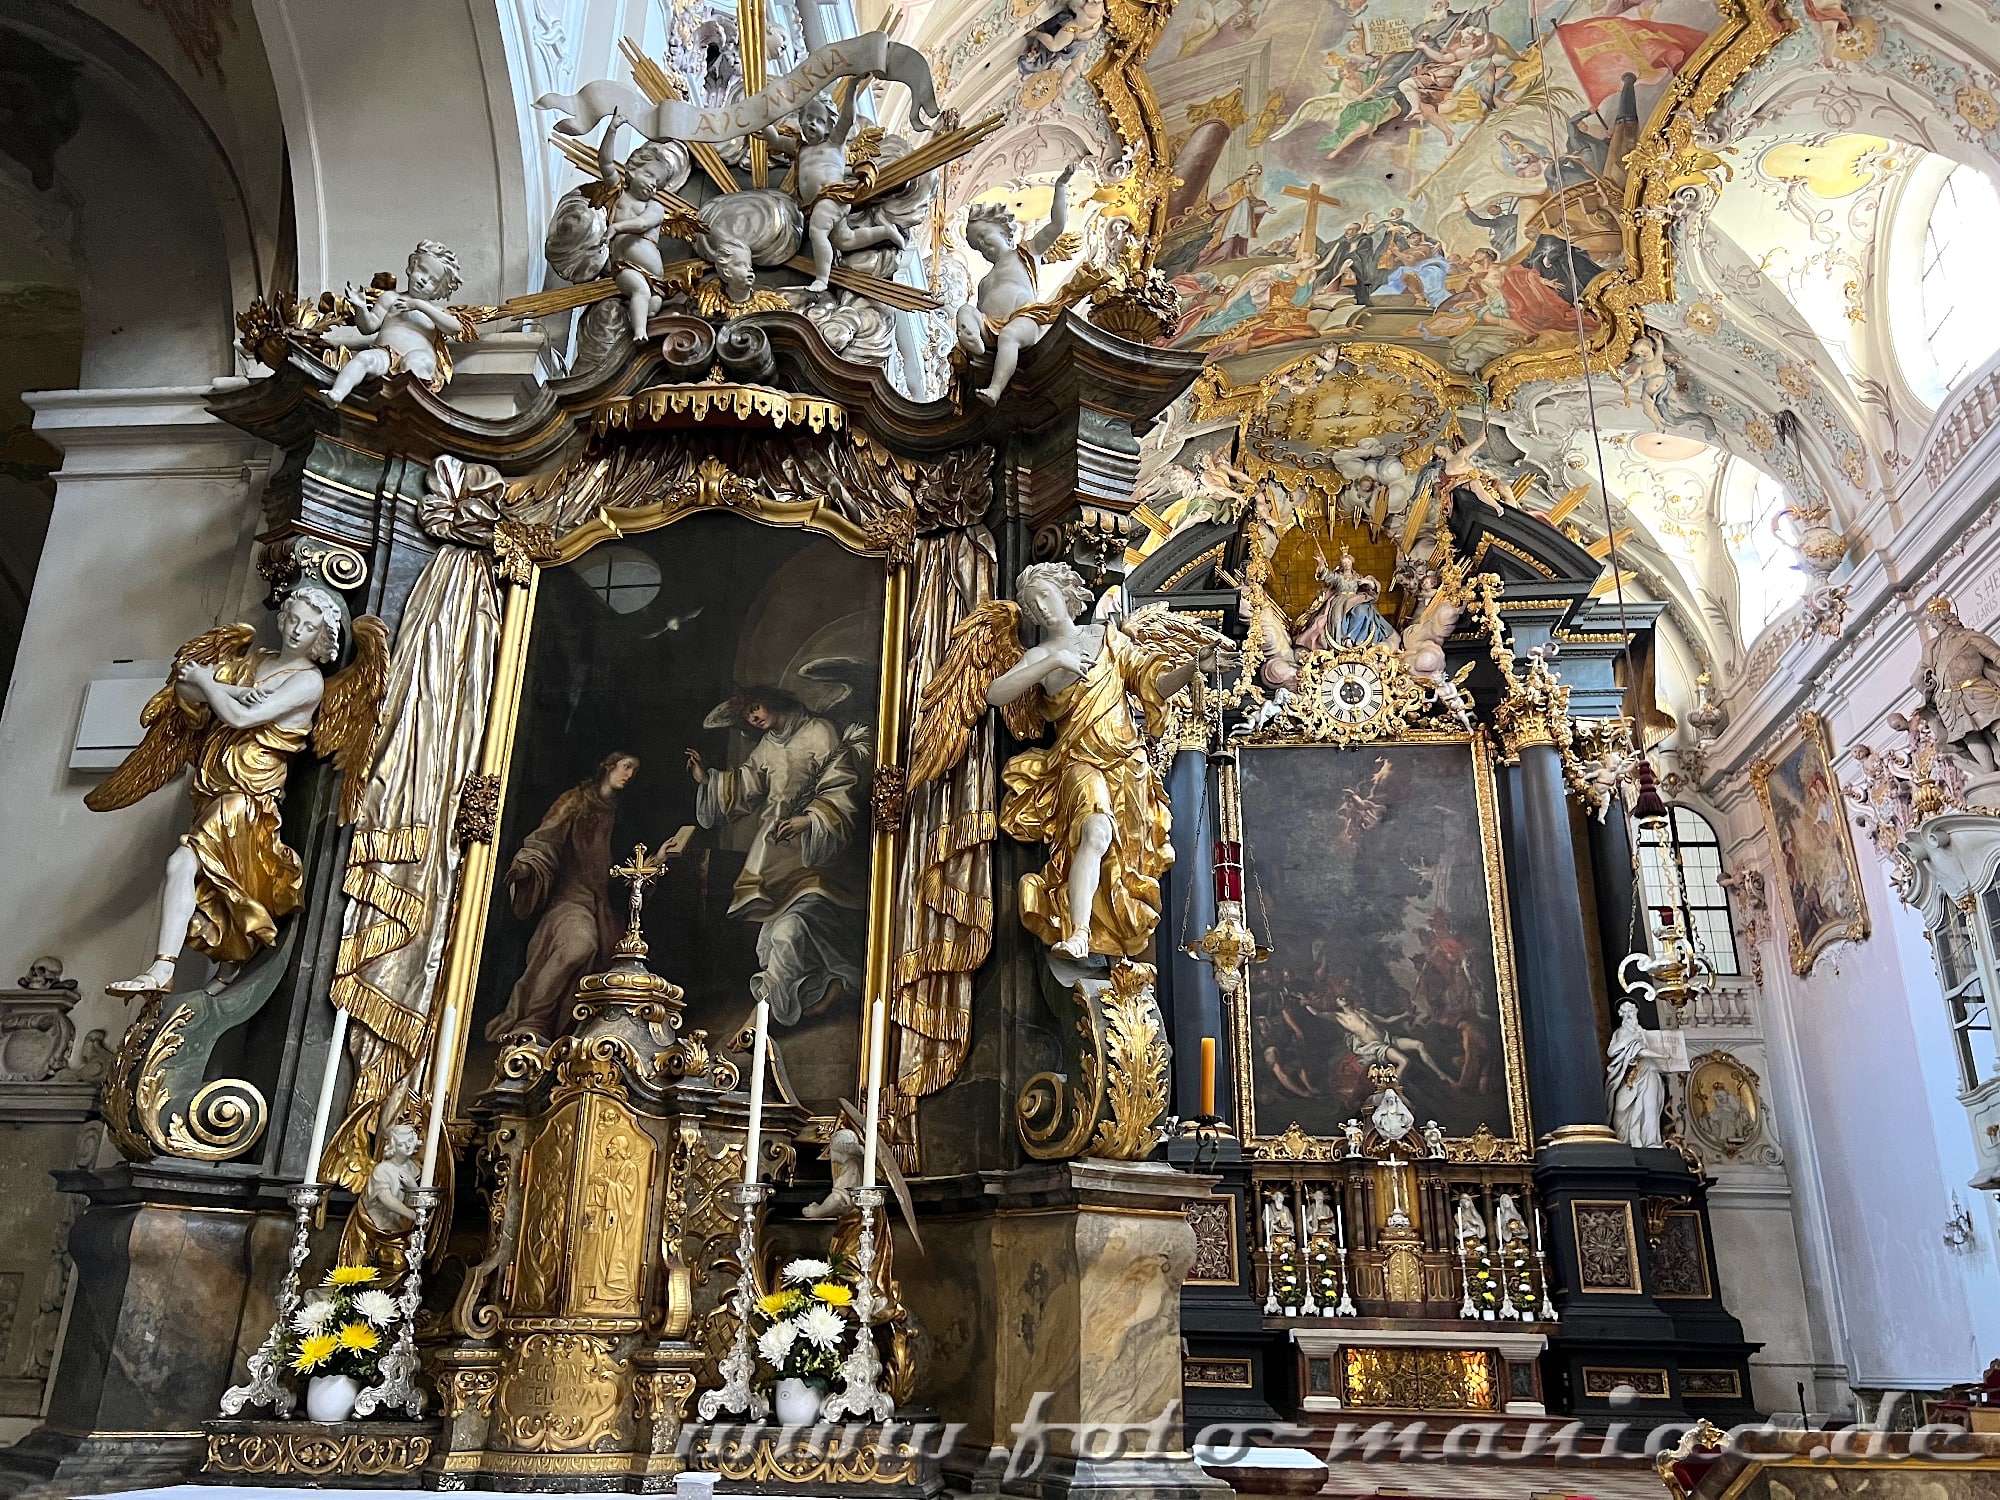 Überall Putten im Altarraum in der Kirche Emmeraum in Regensburg